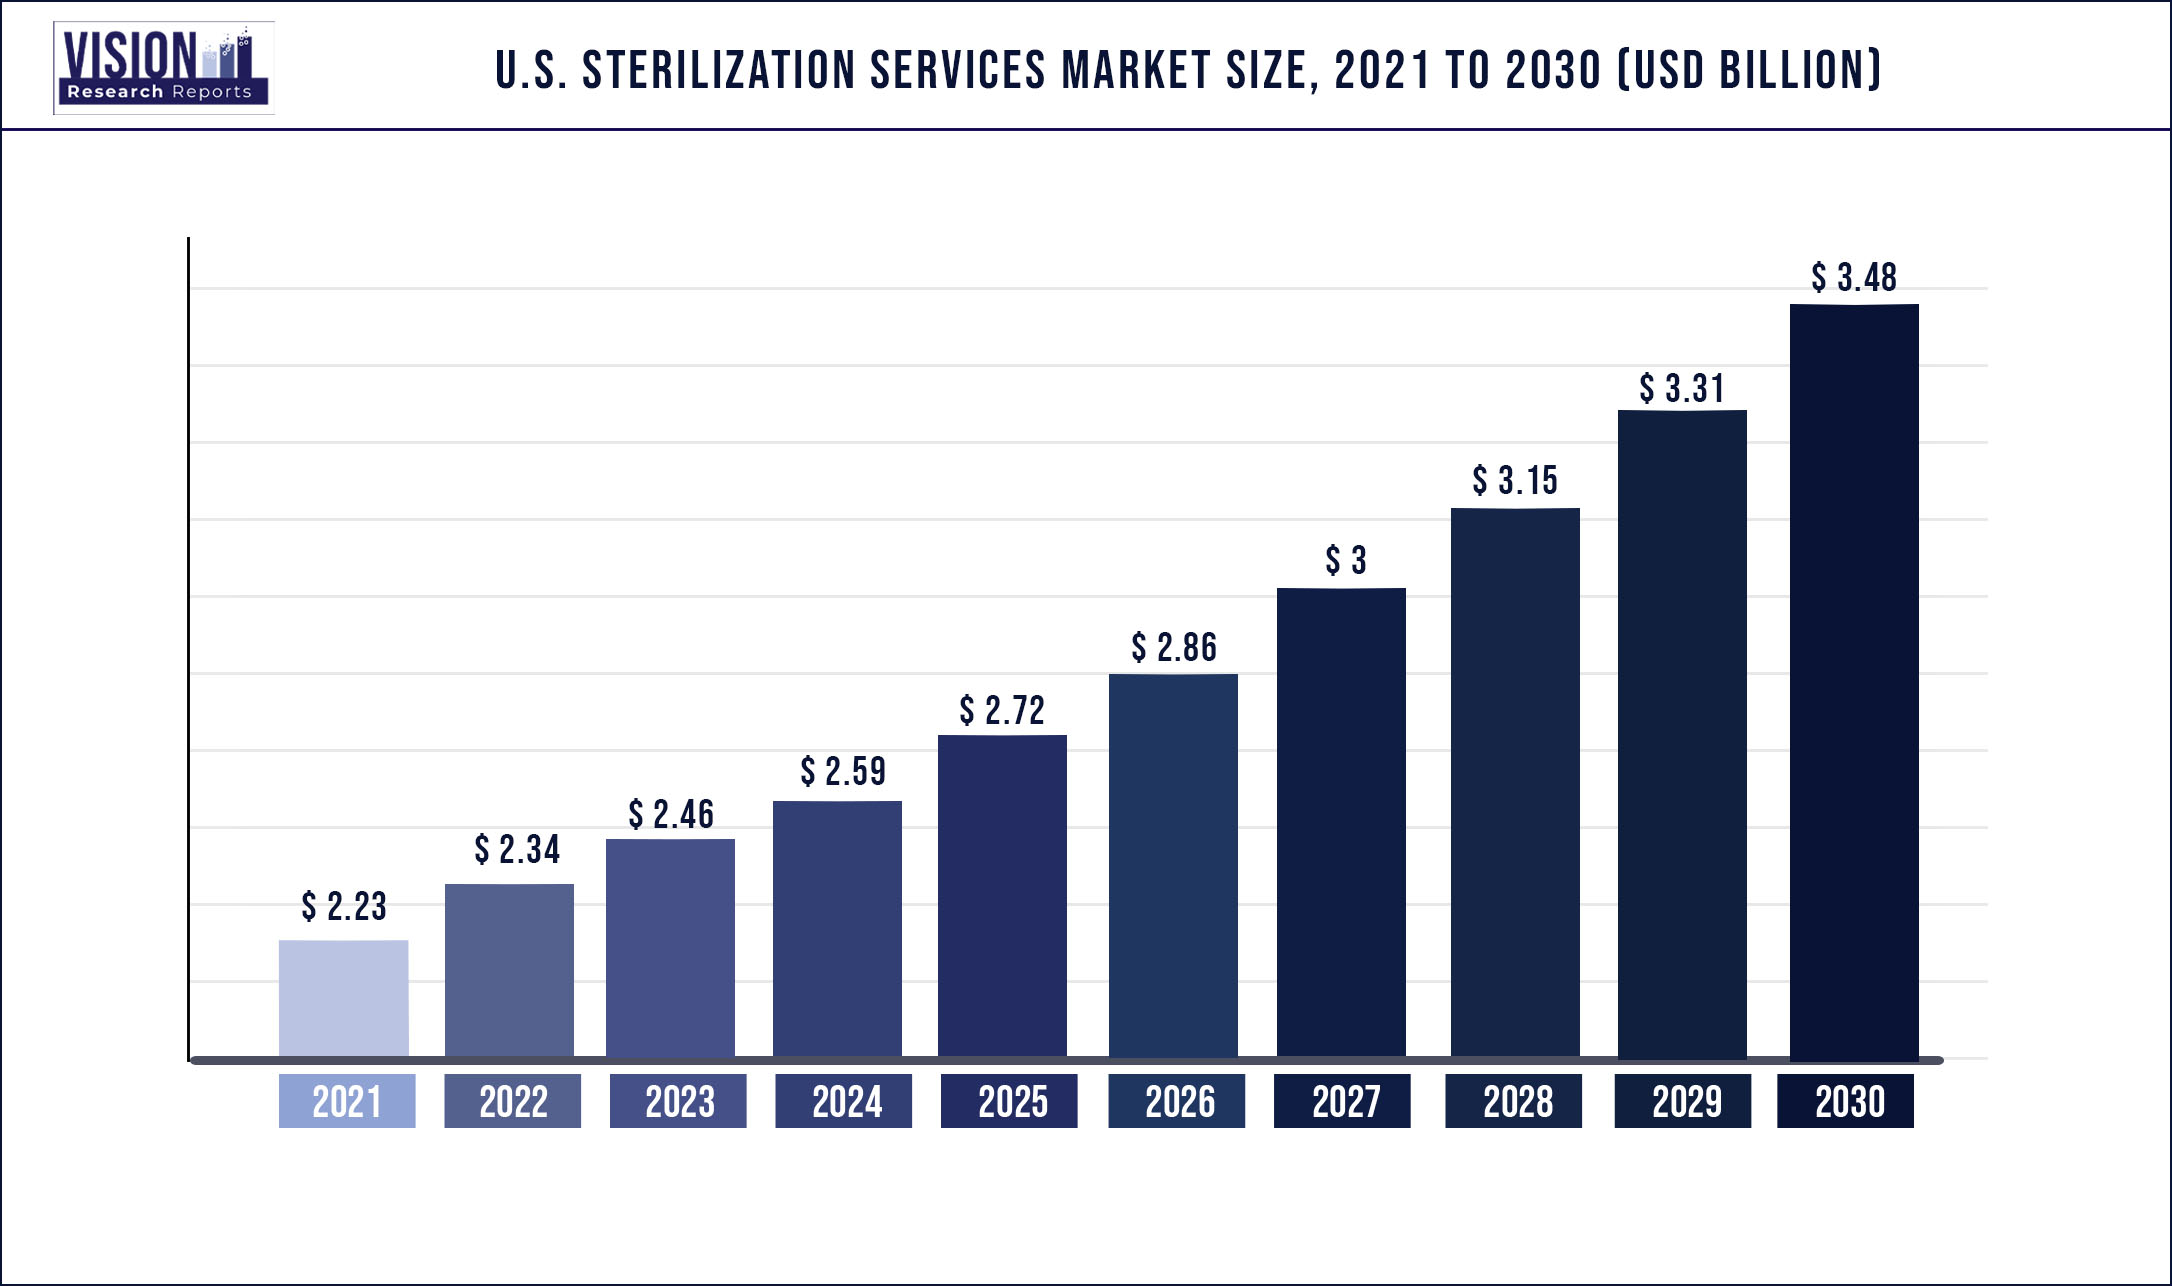 U.S. Sterilization Services Market Size 2021 to 2030